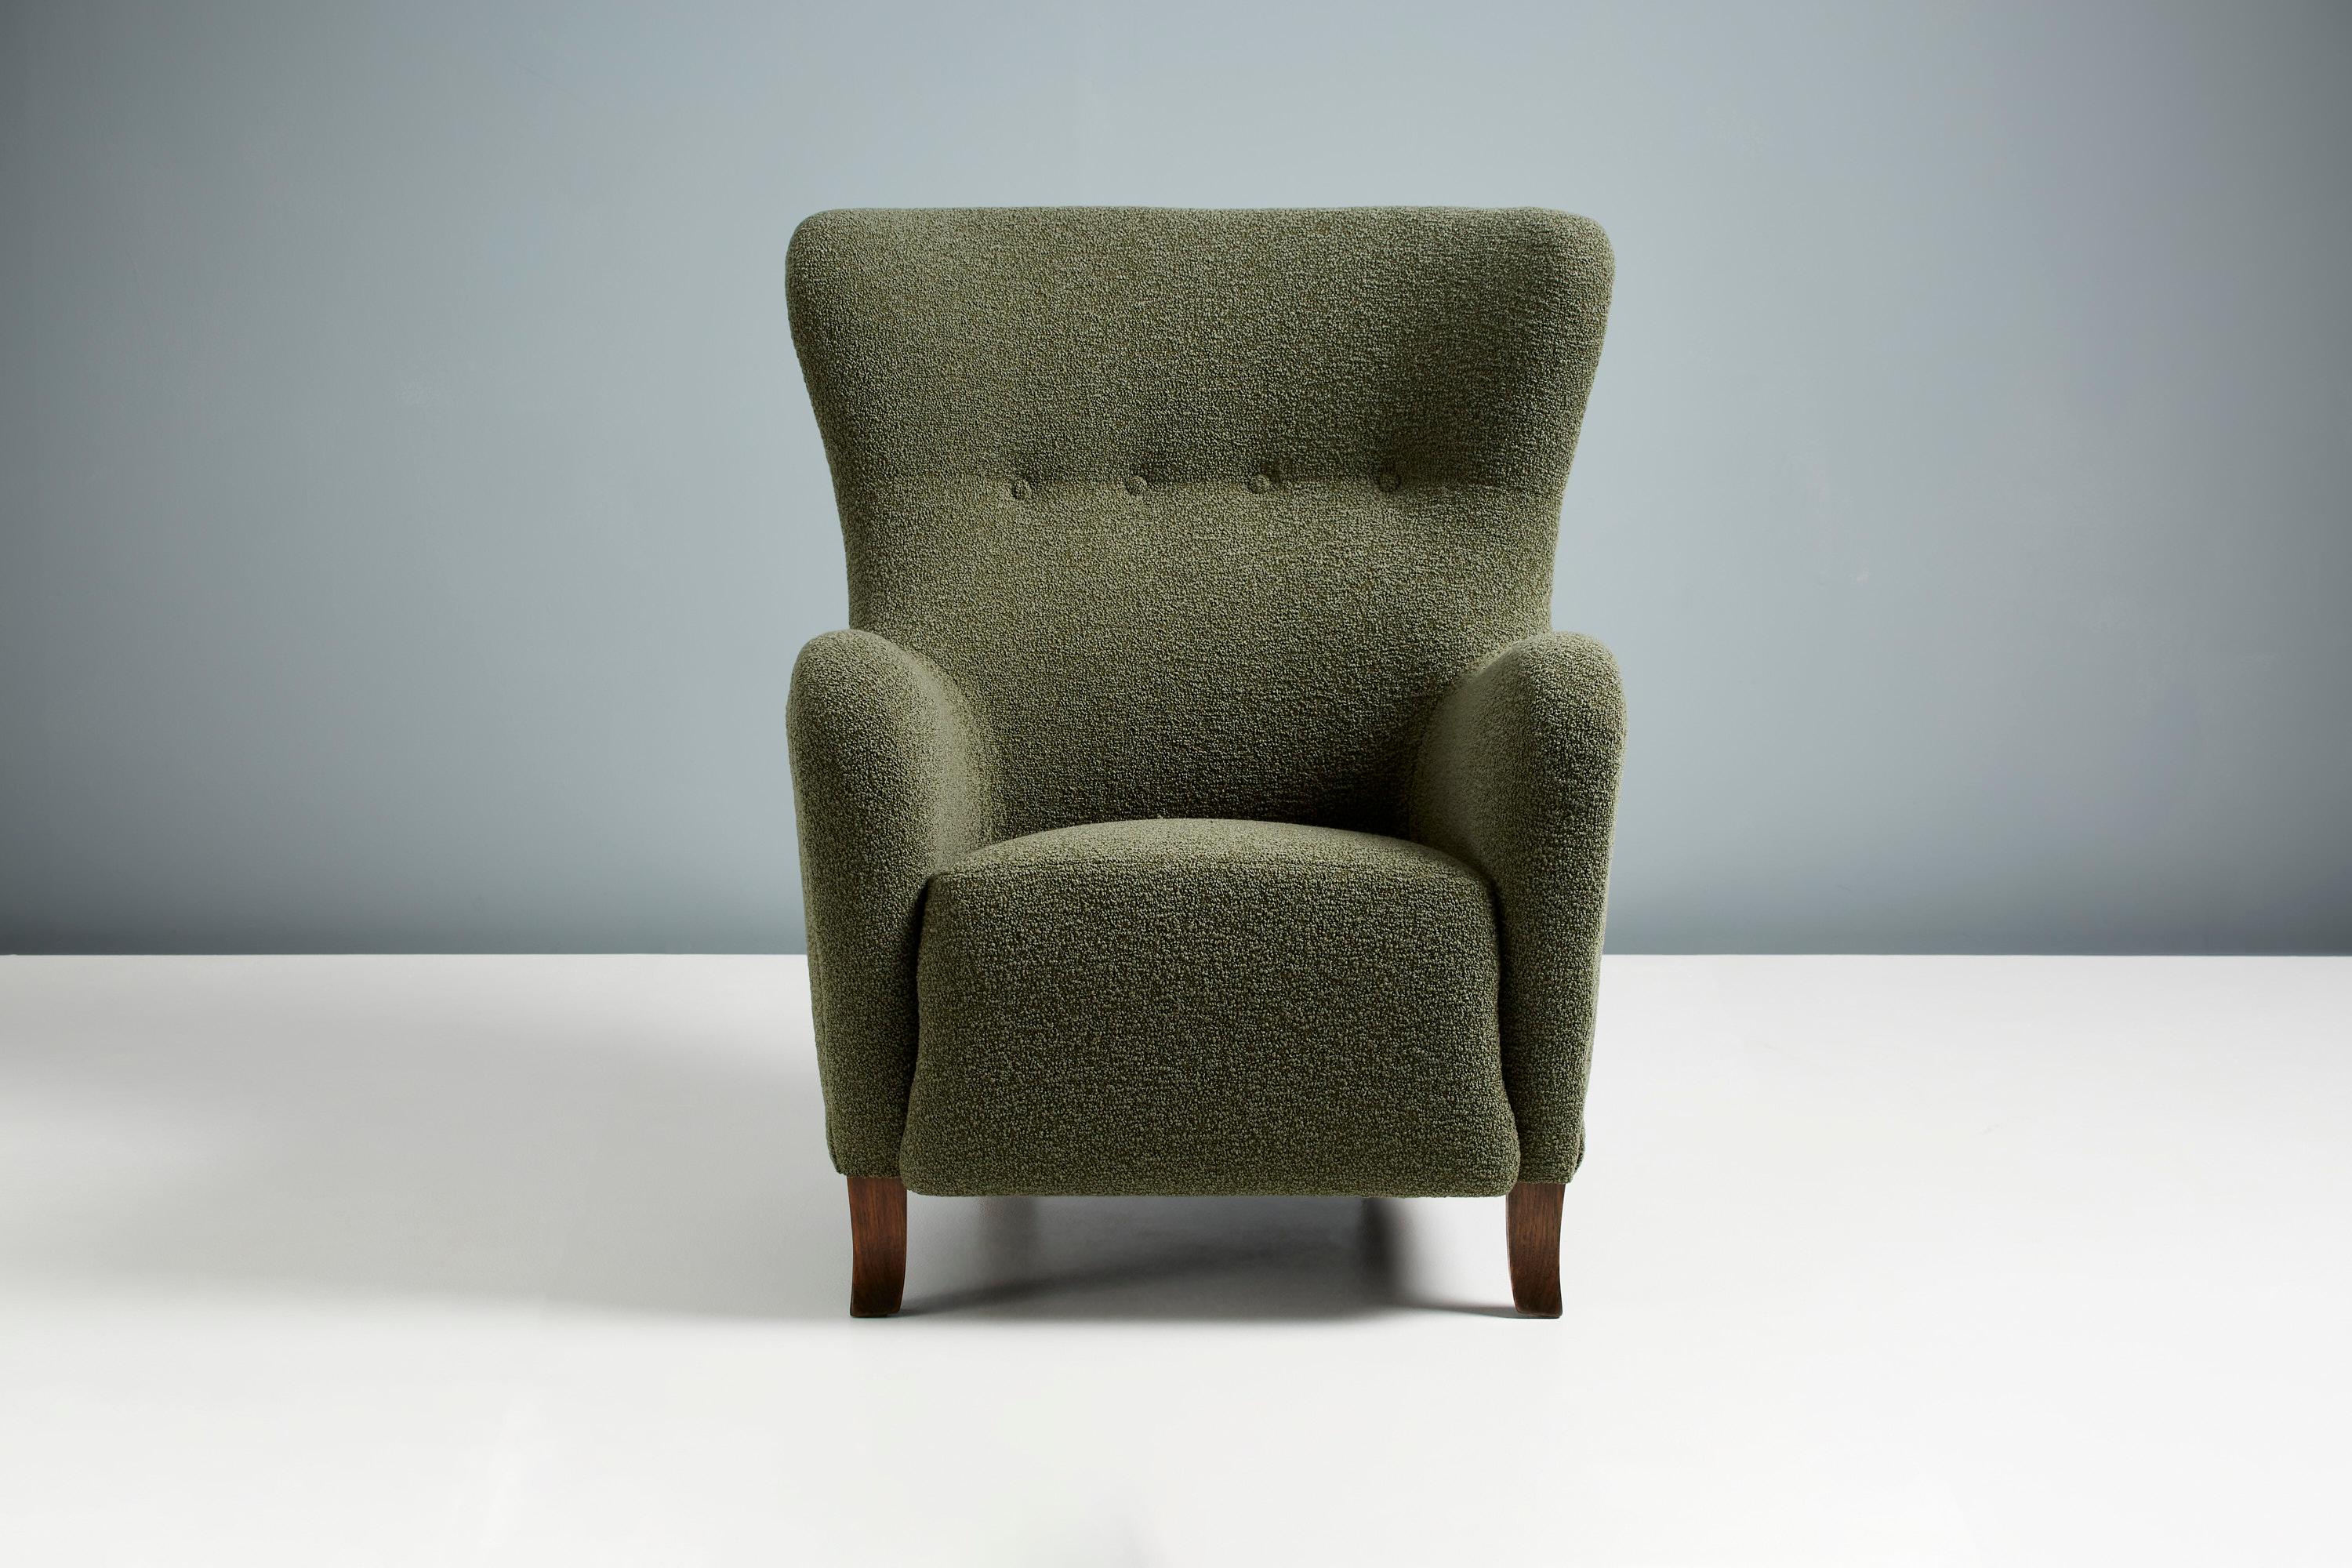 Chaise à oreilles Sampo de Dagmar Design/One

Un fauteuil à oreilles sur mesure développé et produit dans nos ateliers de Londres à l'aide de matériaux de la plus haute qualité. Le cadre est fabriqué en bois de tulipier massif et l'assise est